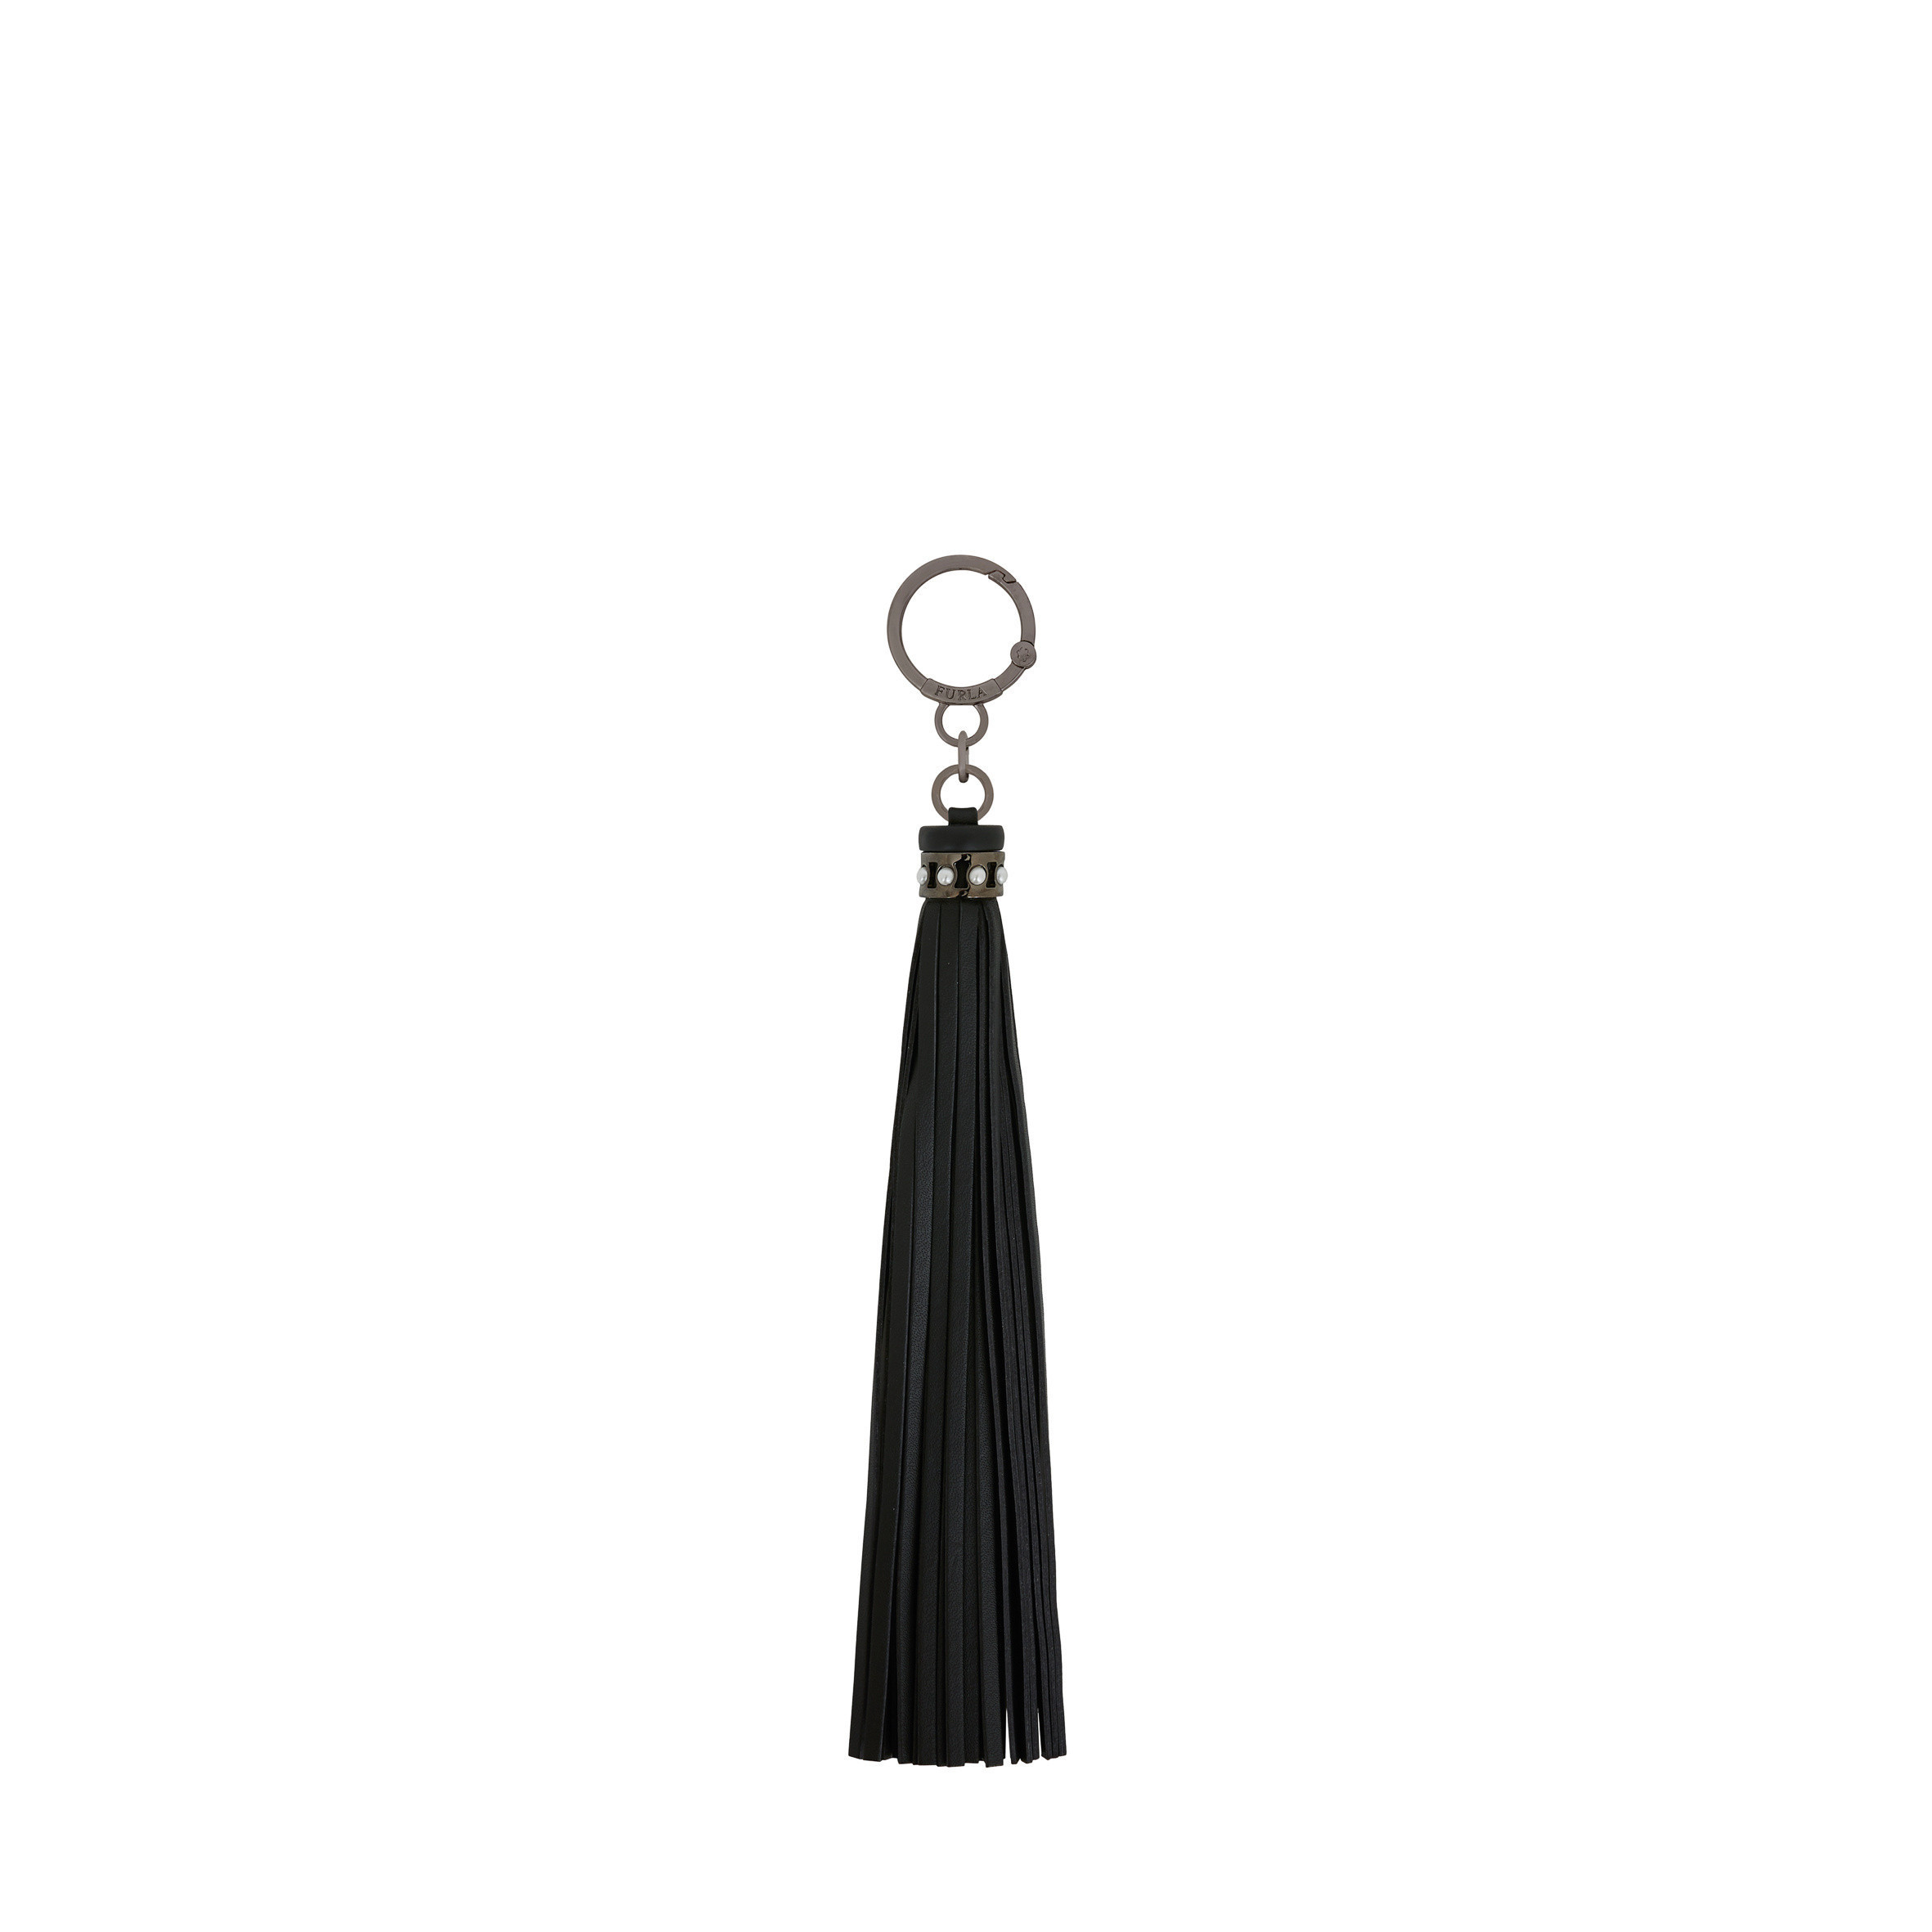 Furla Key Ring - Nero - One Size